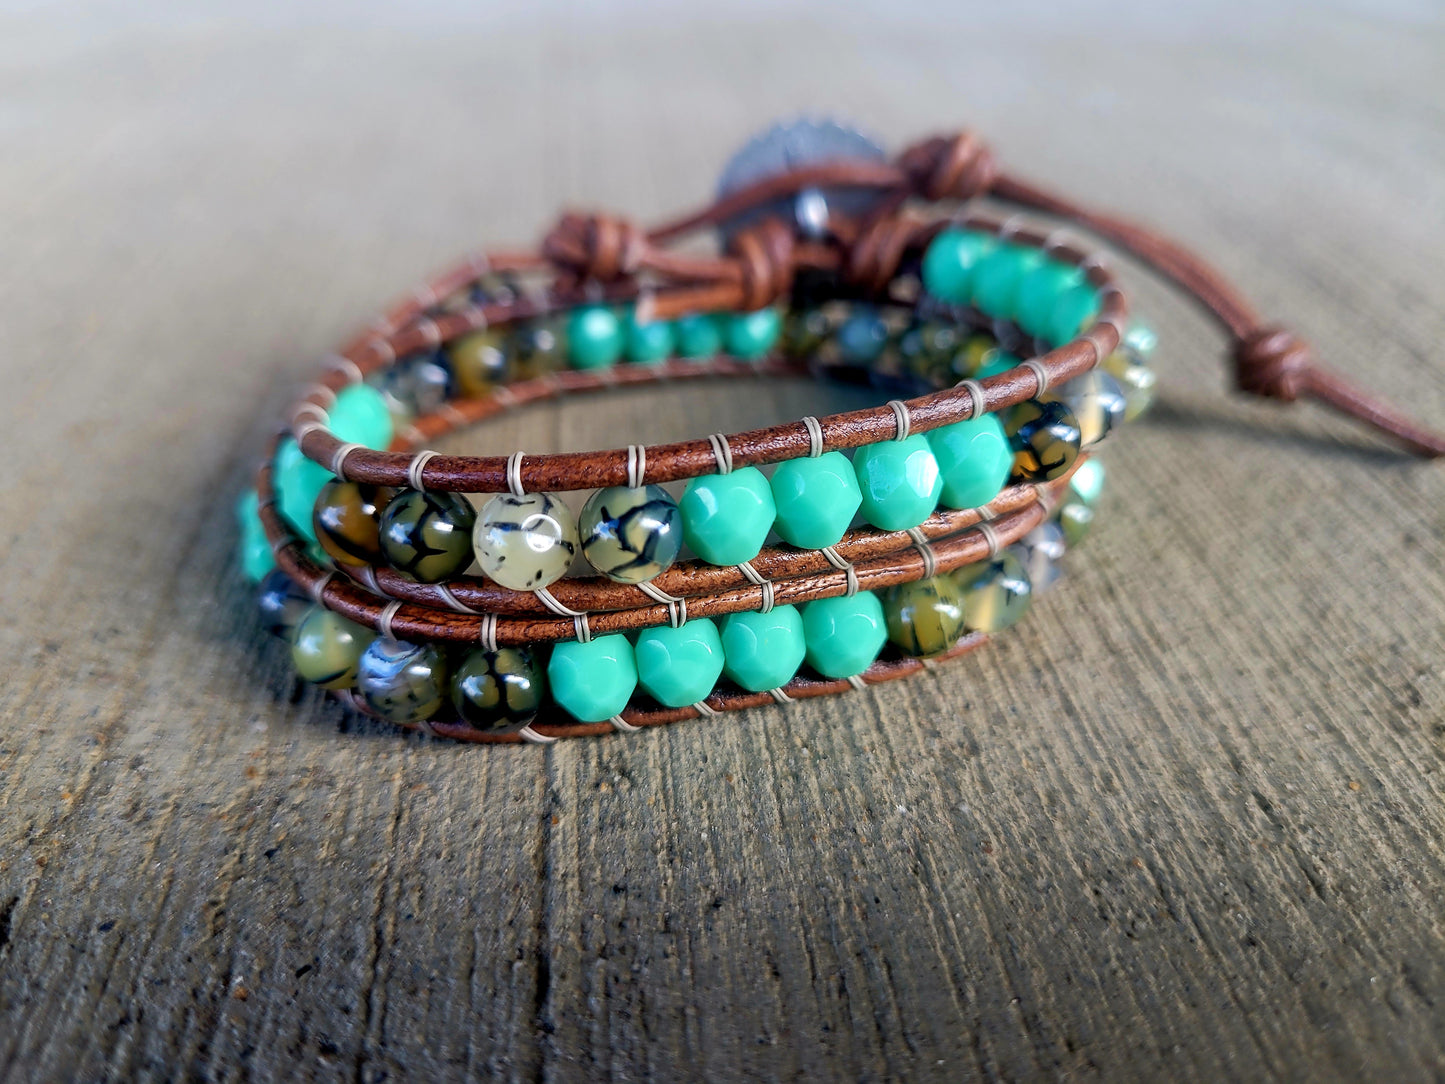 Turquoise Czech glass wrap bracelet